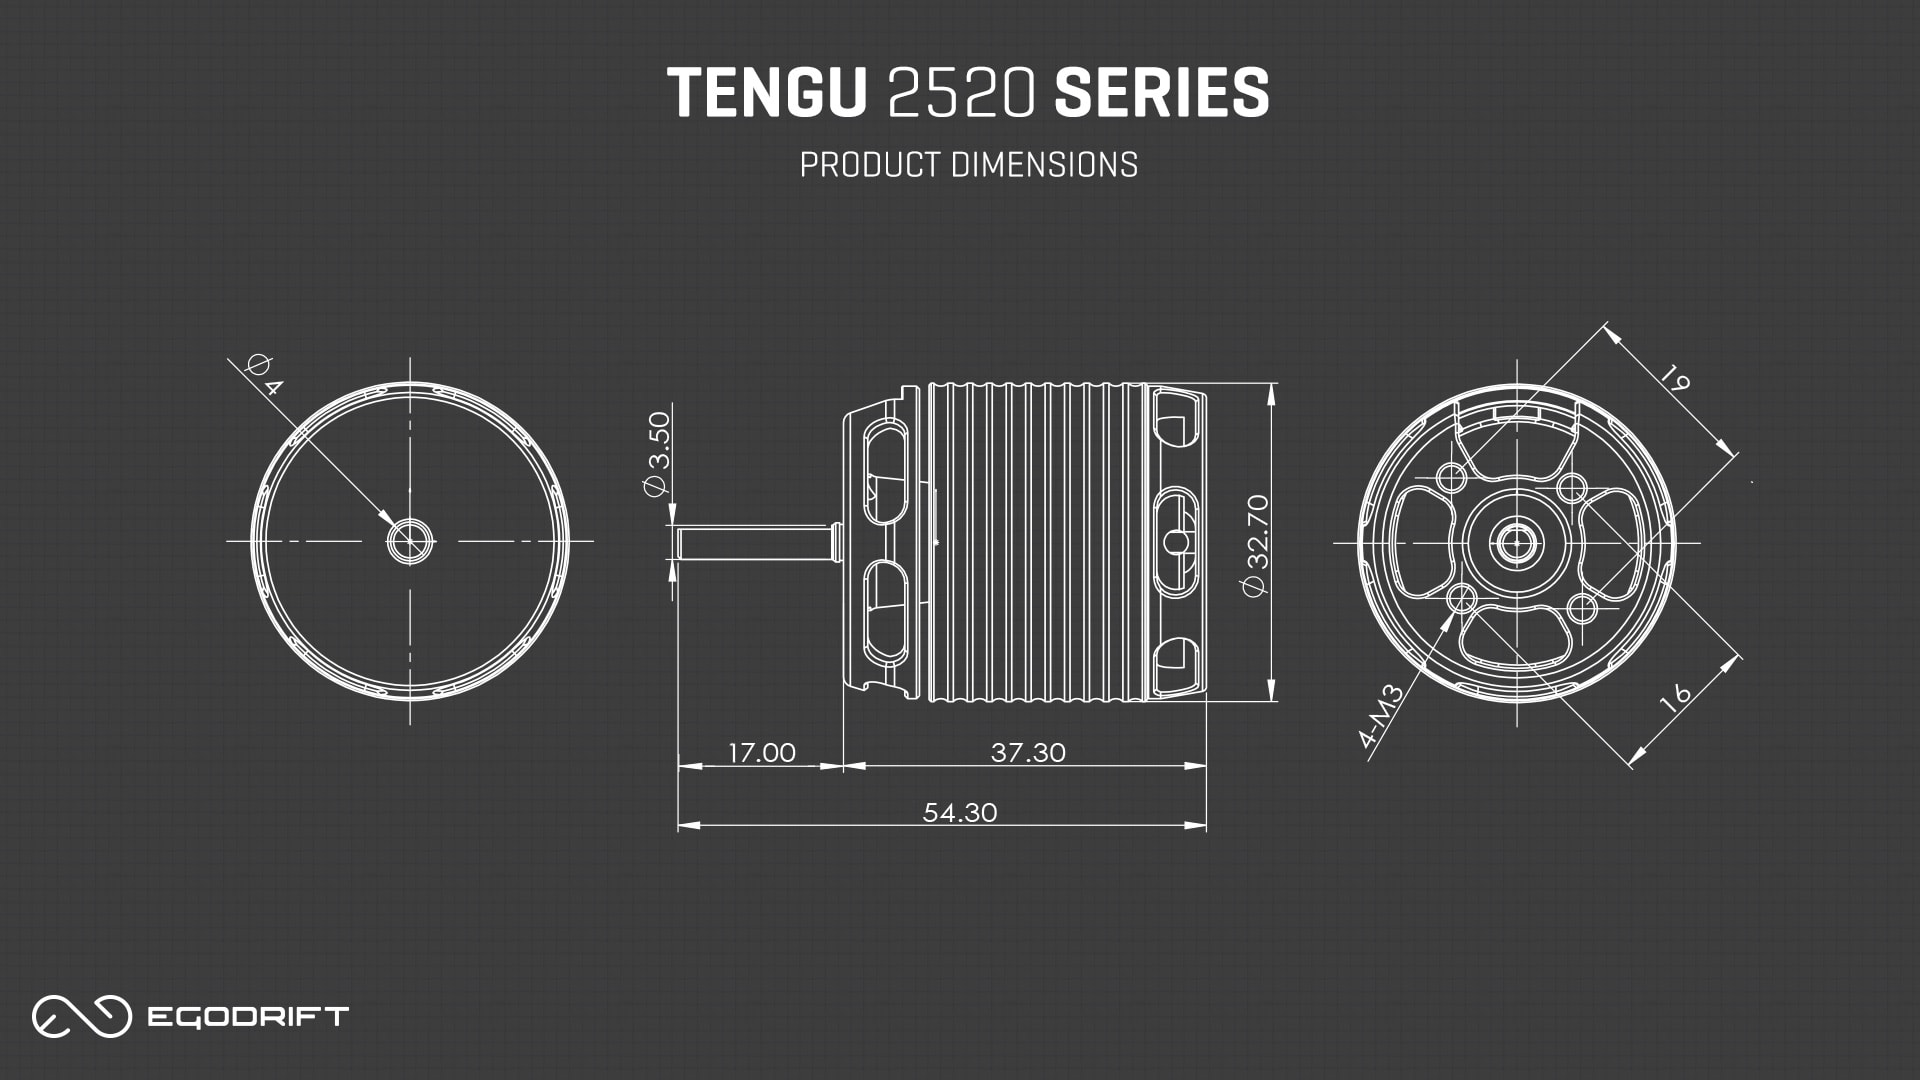 EGODRIFT Tengu 2520 Series Product Dimensions